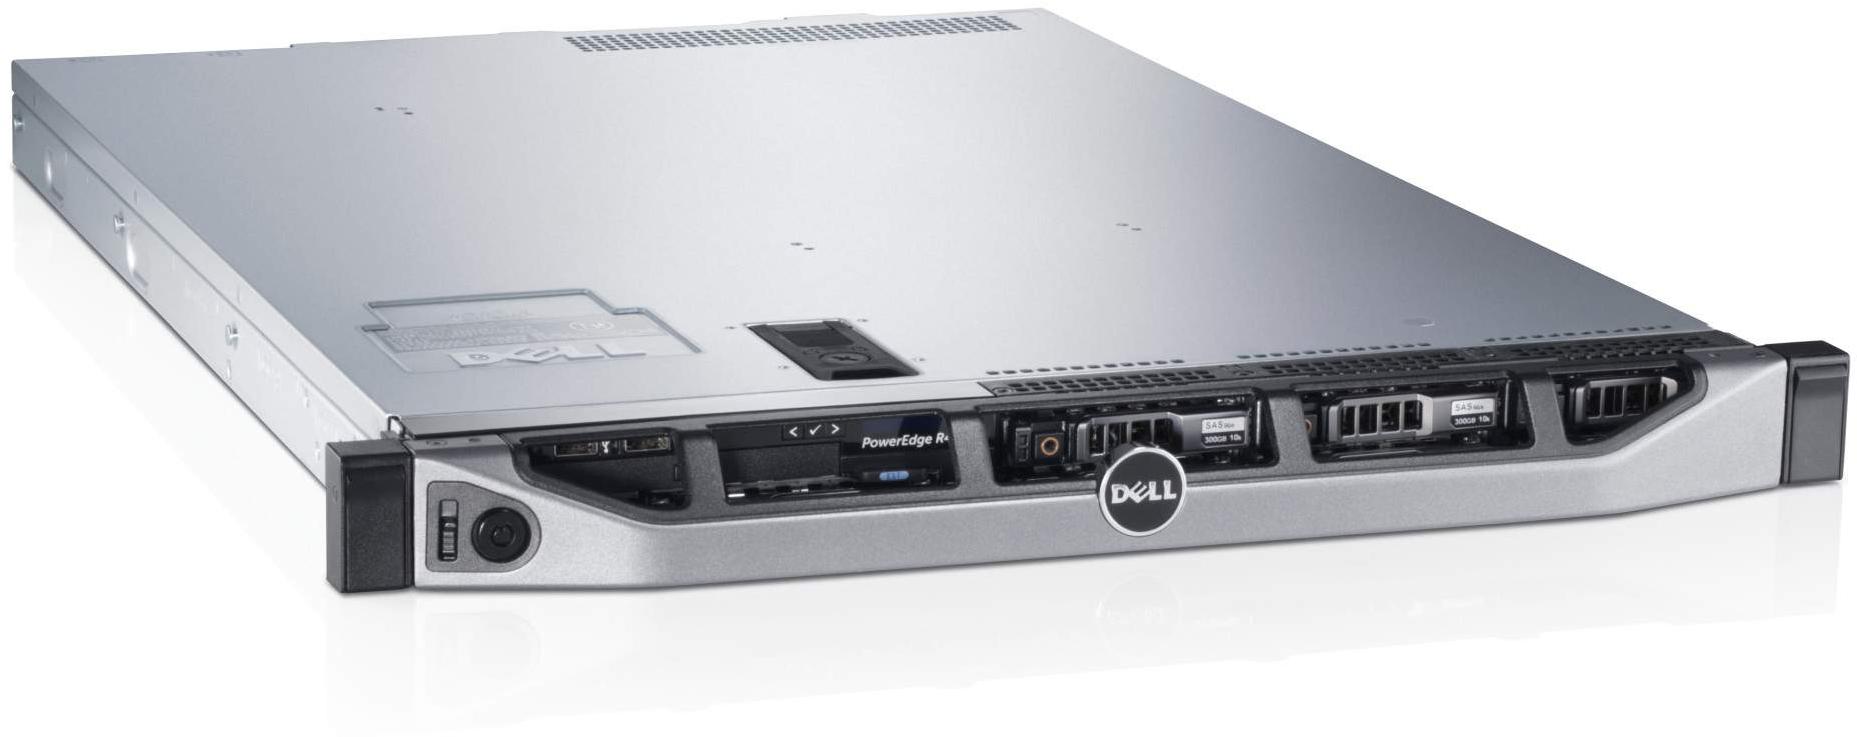     Dell PowerEdge R620 (210-39504-91)  2